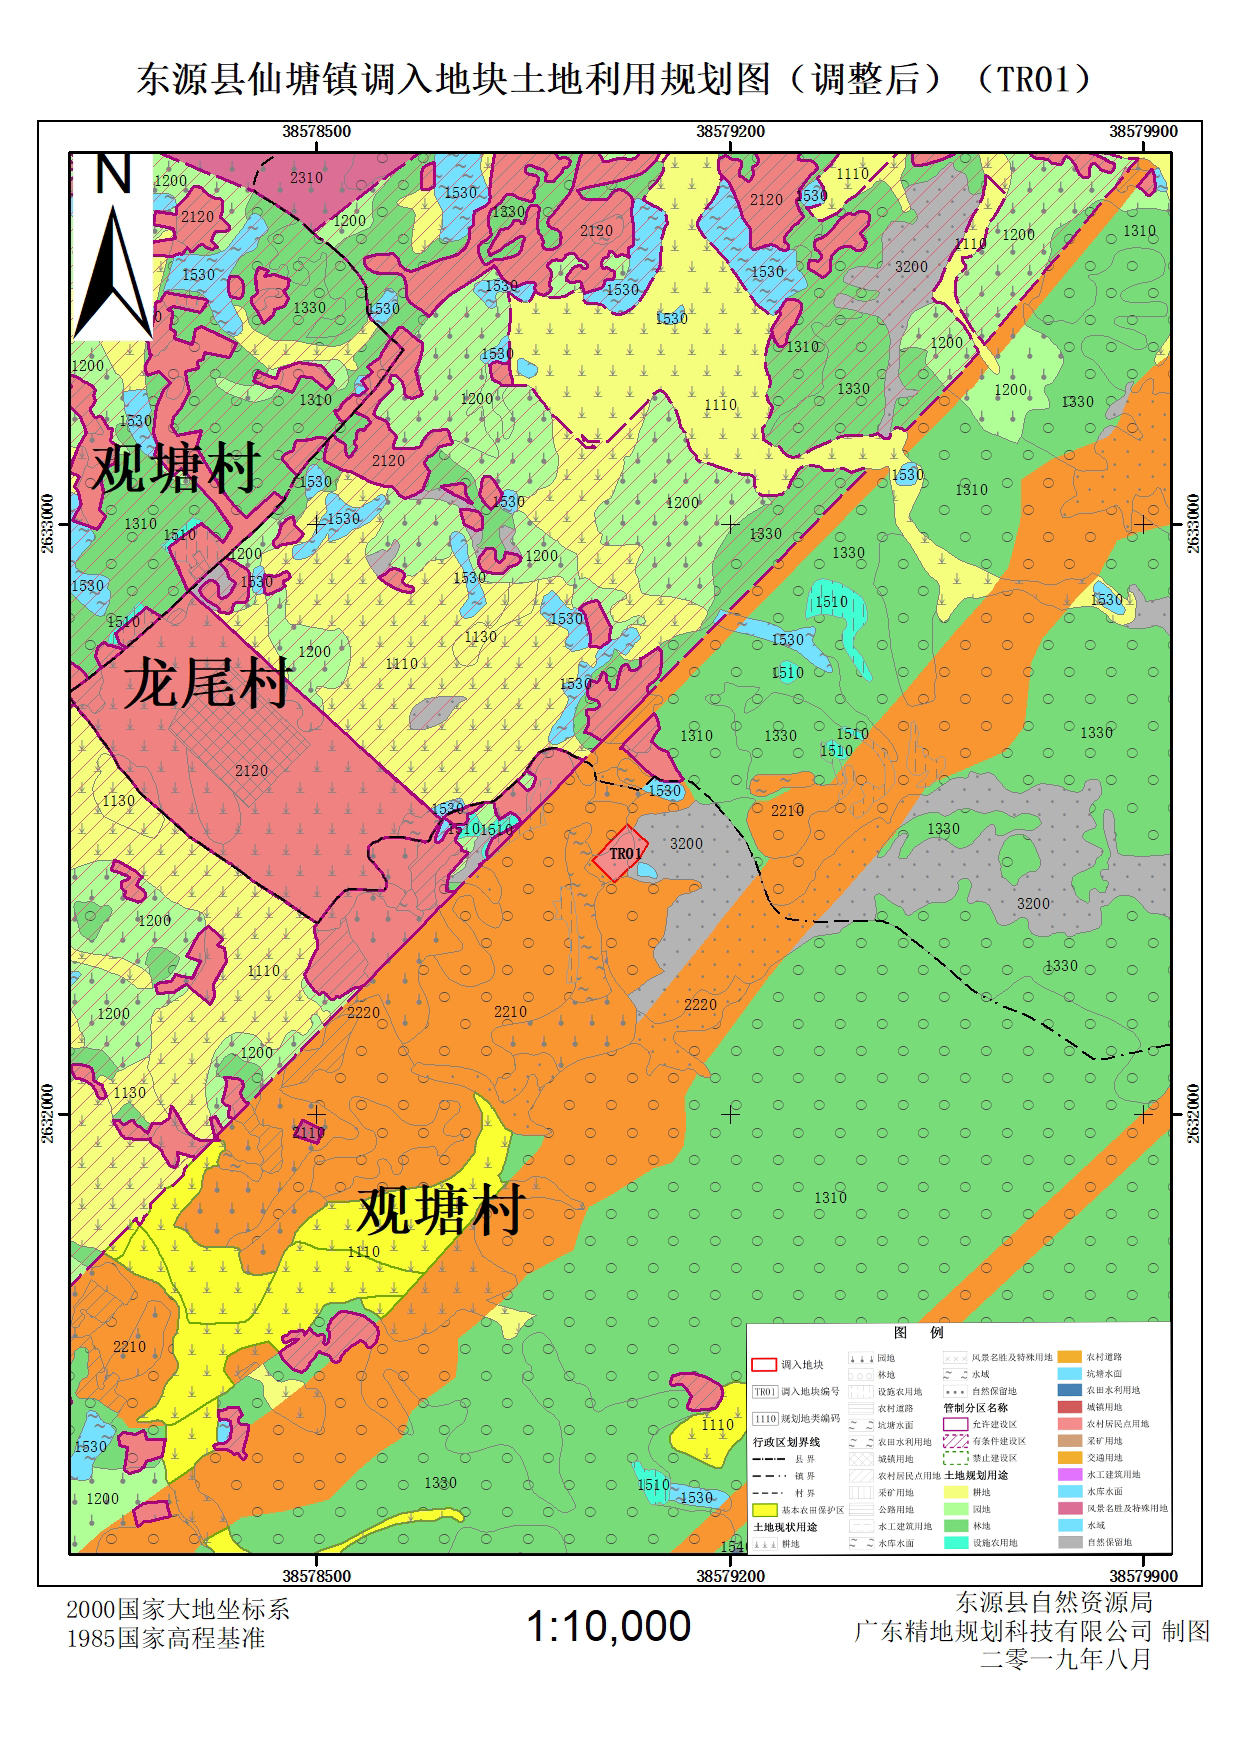 东源县仙塘镇土地利用总体规划(2010